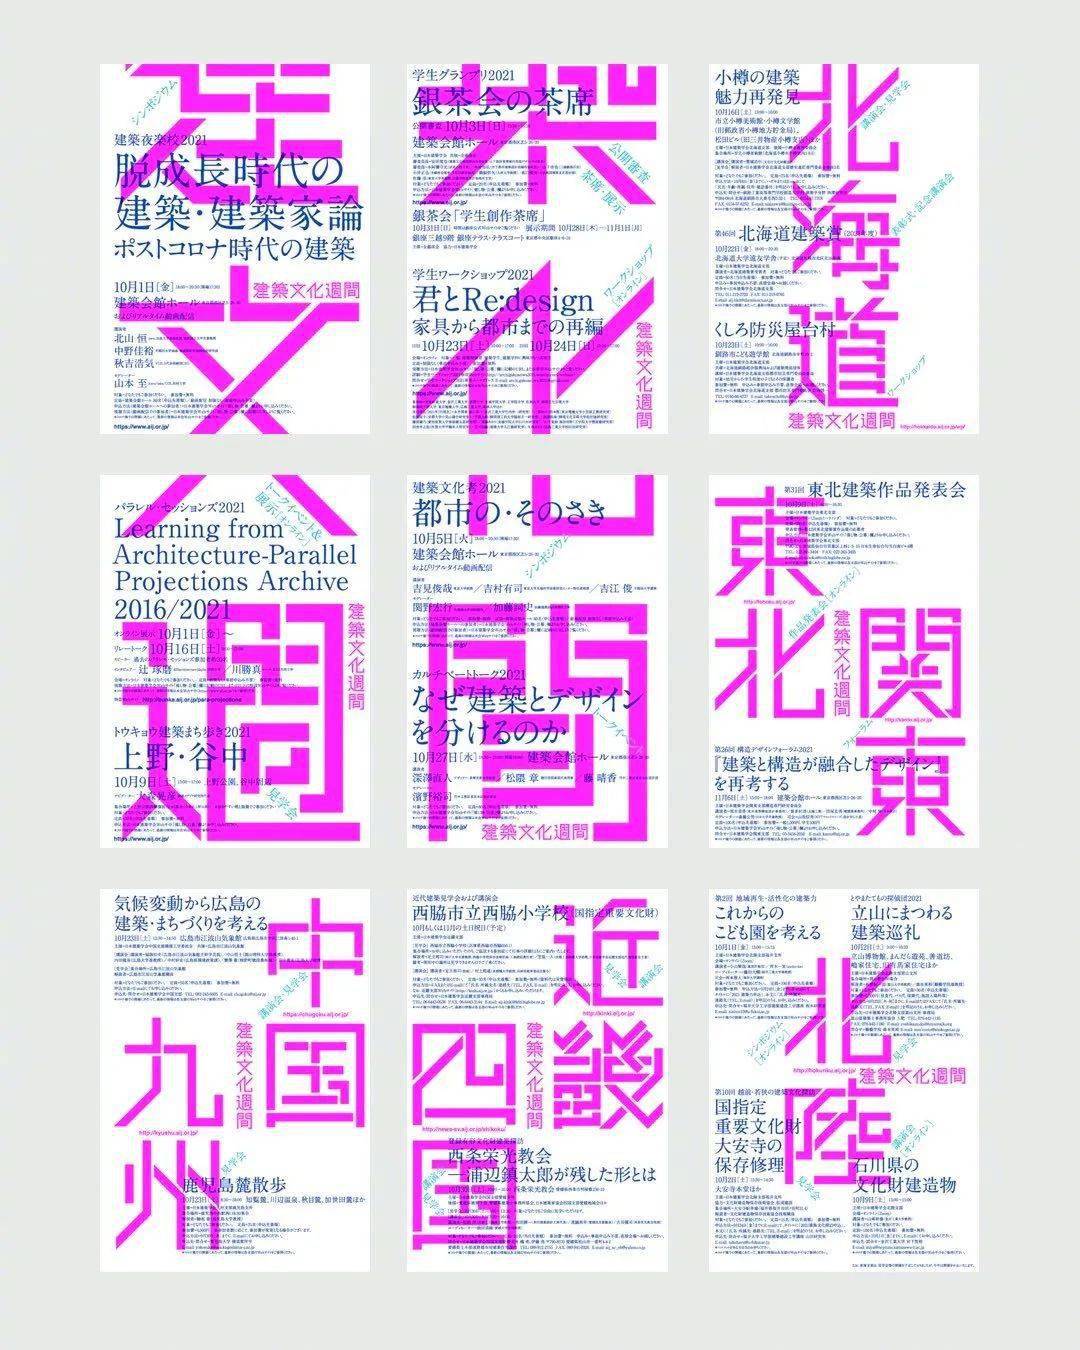 广告印刷彩页|惠州麦地下埔创意平面设计、广告印刷画册彩页、淘宝美工